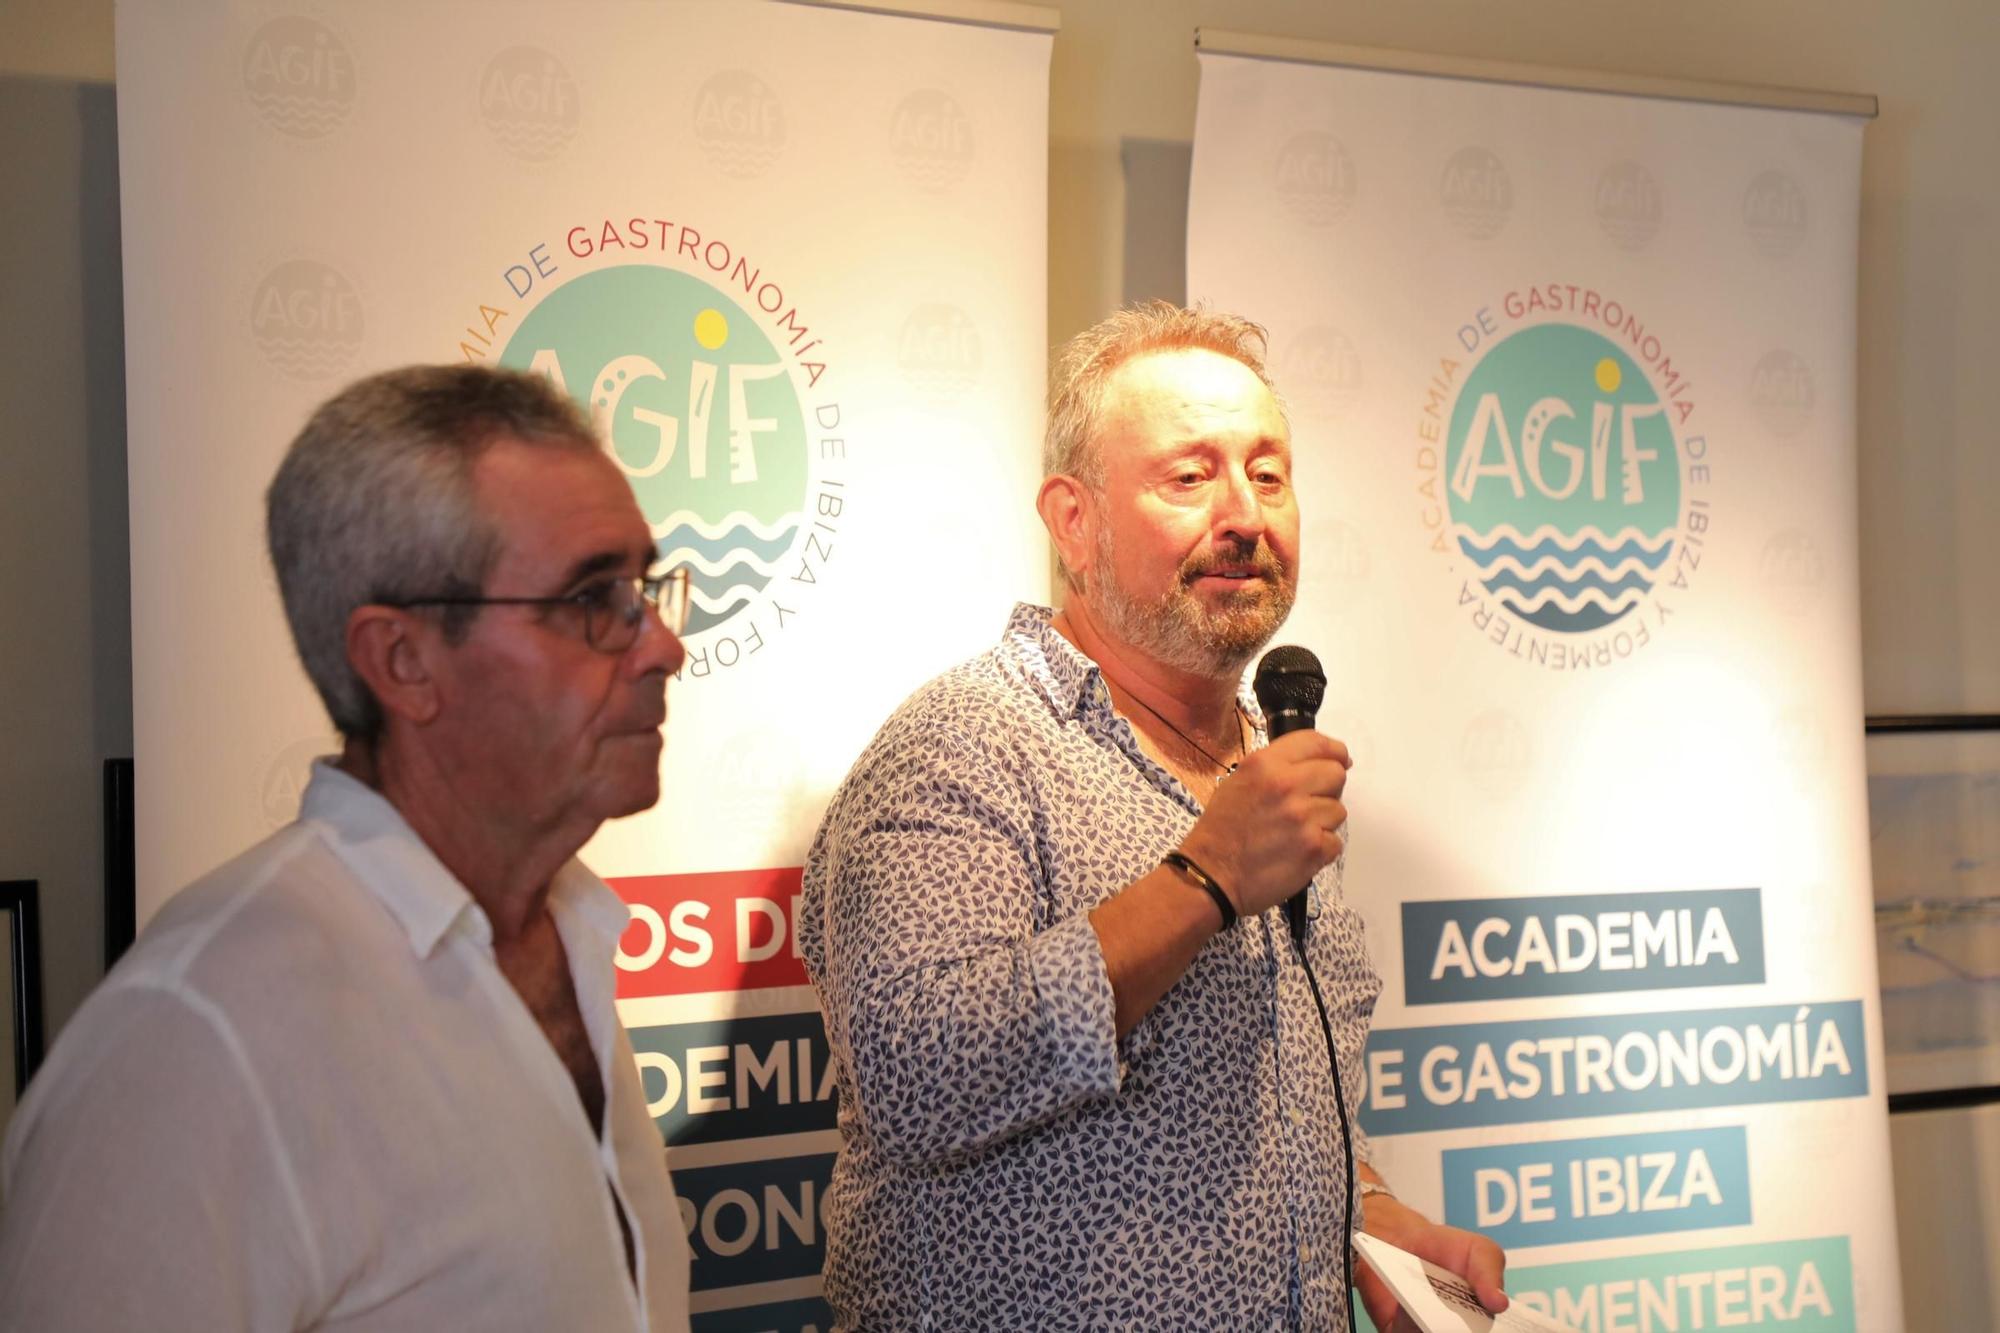 Galería: Premios de la Academia de Gastronomía a la tradición, la fusión y el producto local de Formentera